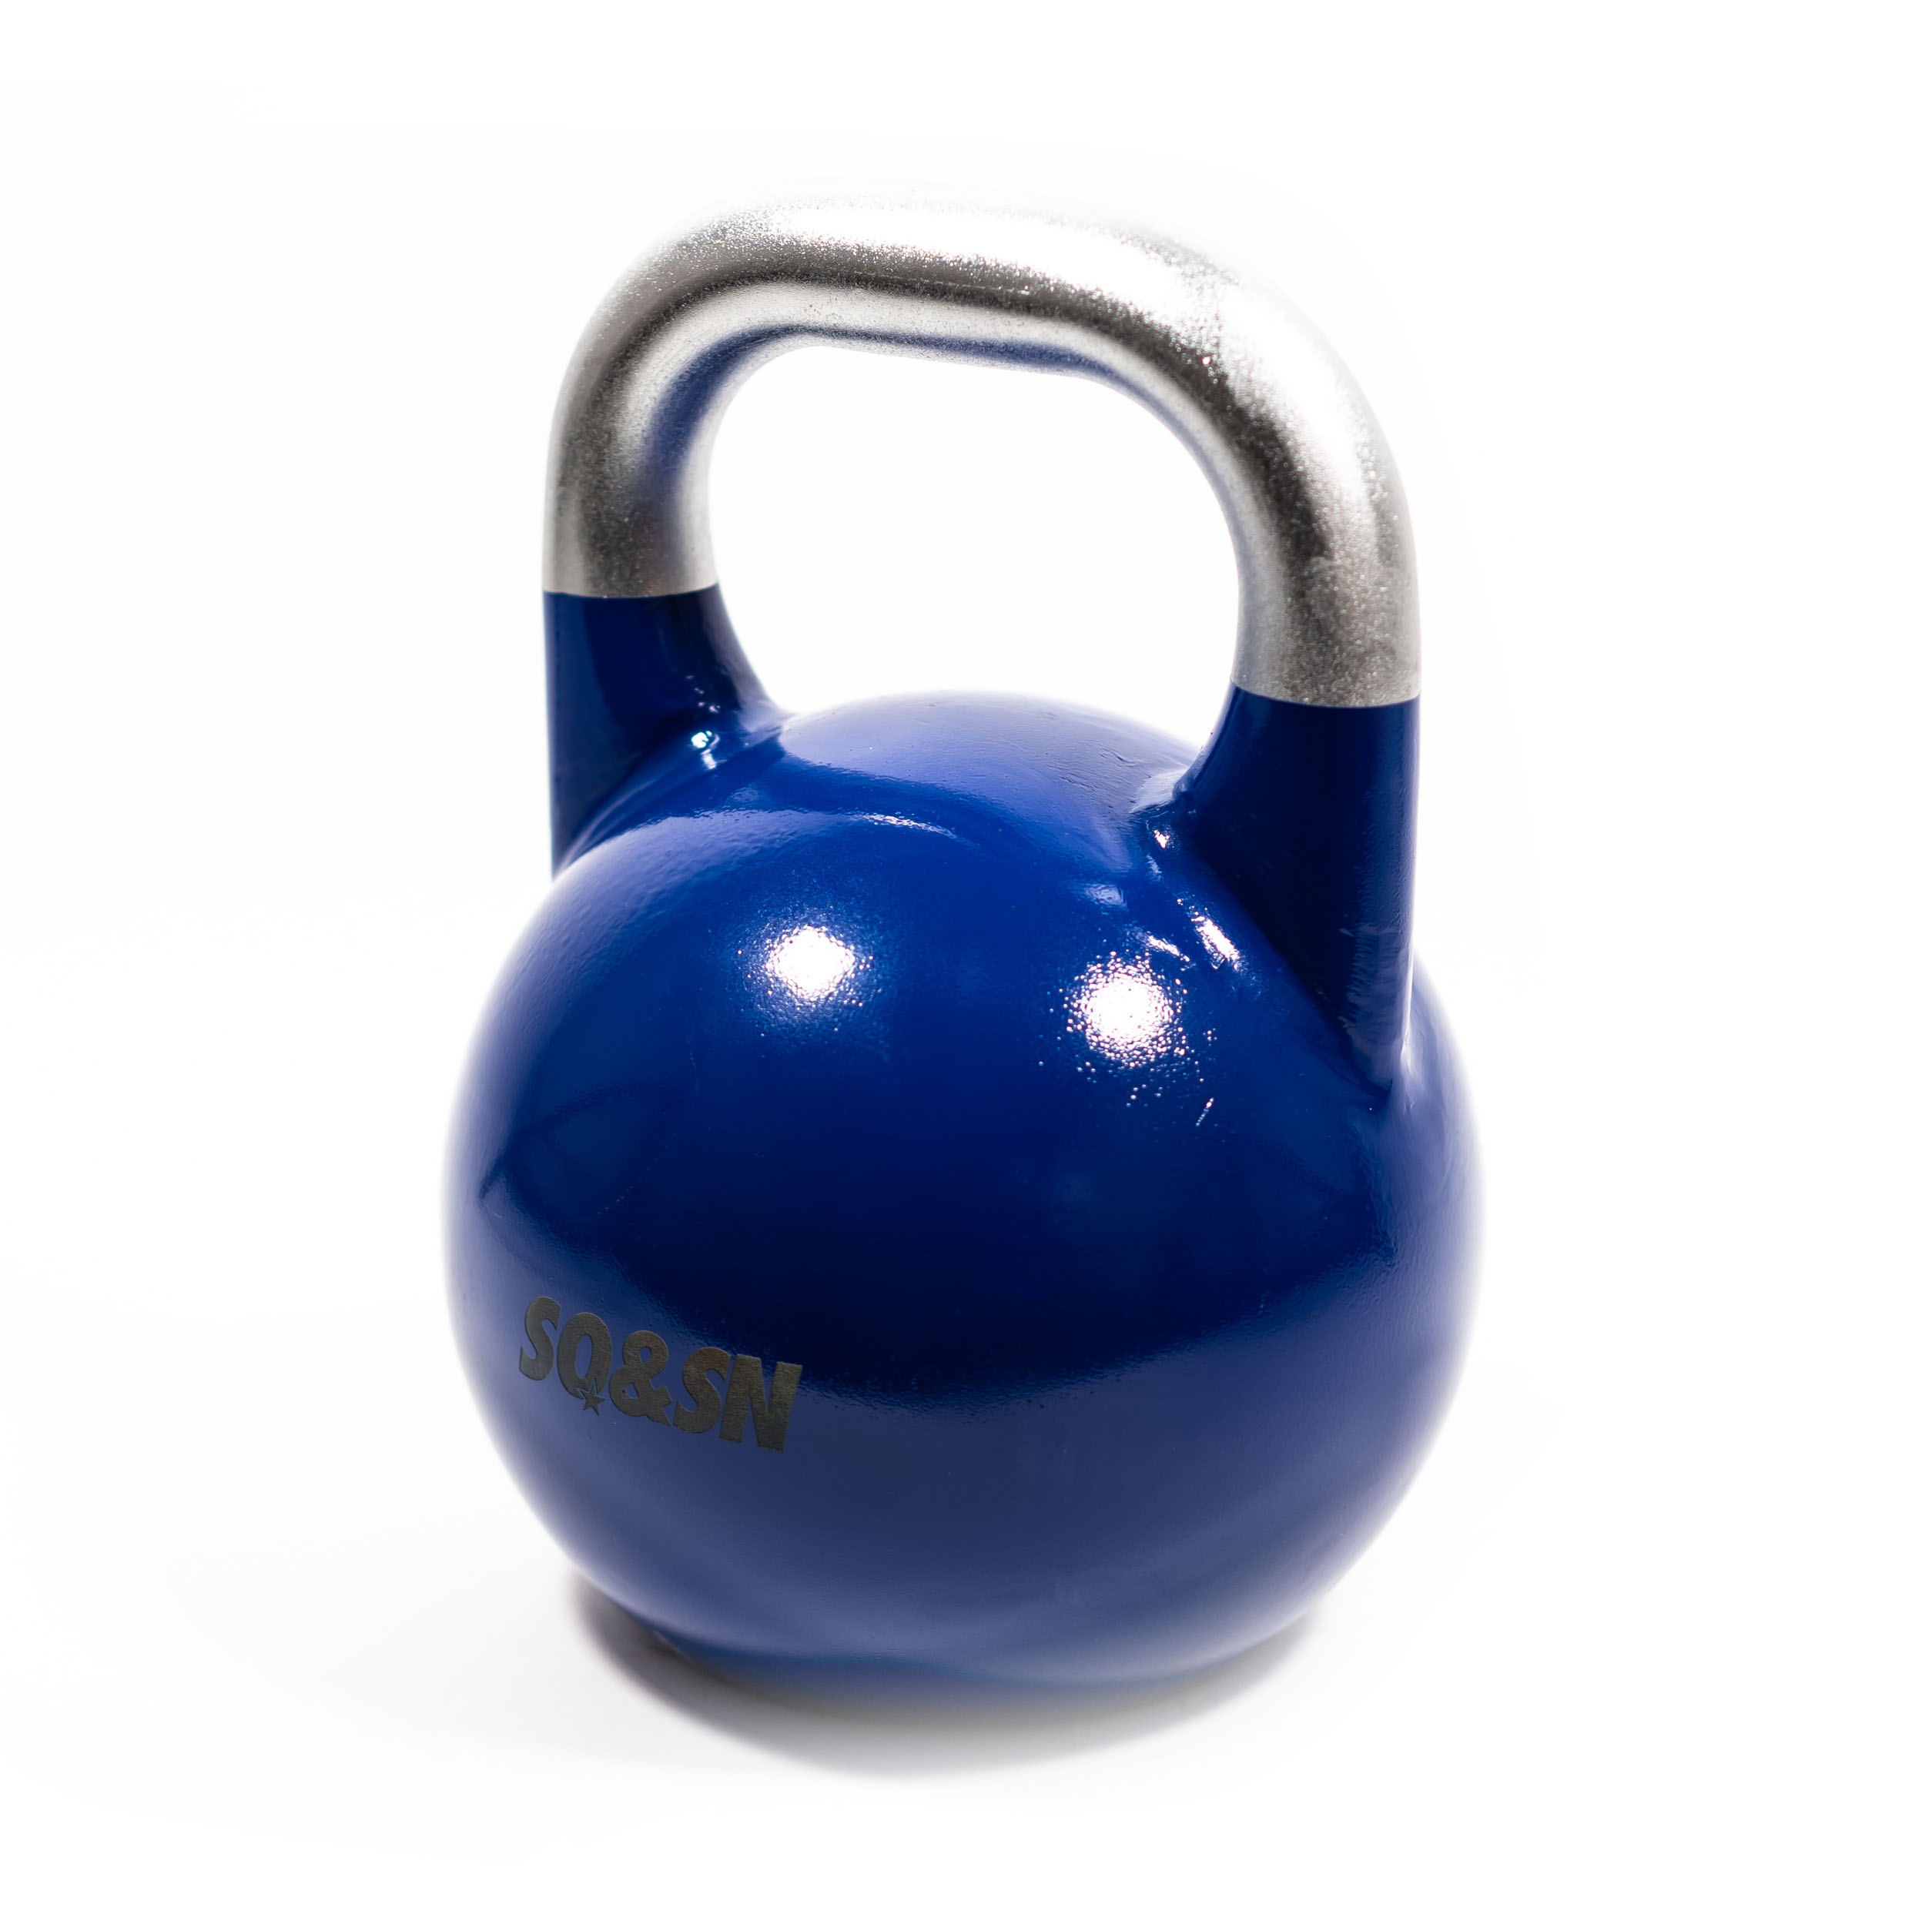 Brug SQ&SN Competition Kettlebell (12 kg) i støbejern. Udstyr til crossfit træning, styrketræning og funktionel træning til en forbedret oplevelse